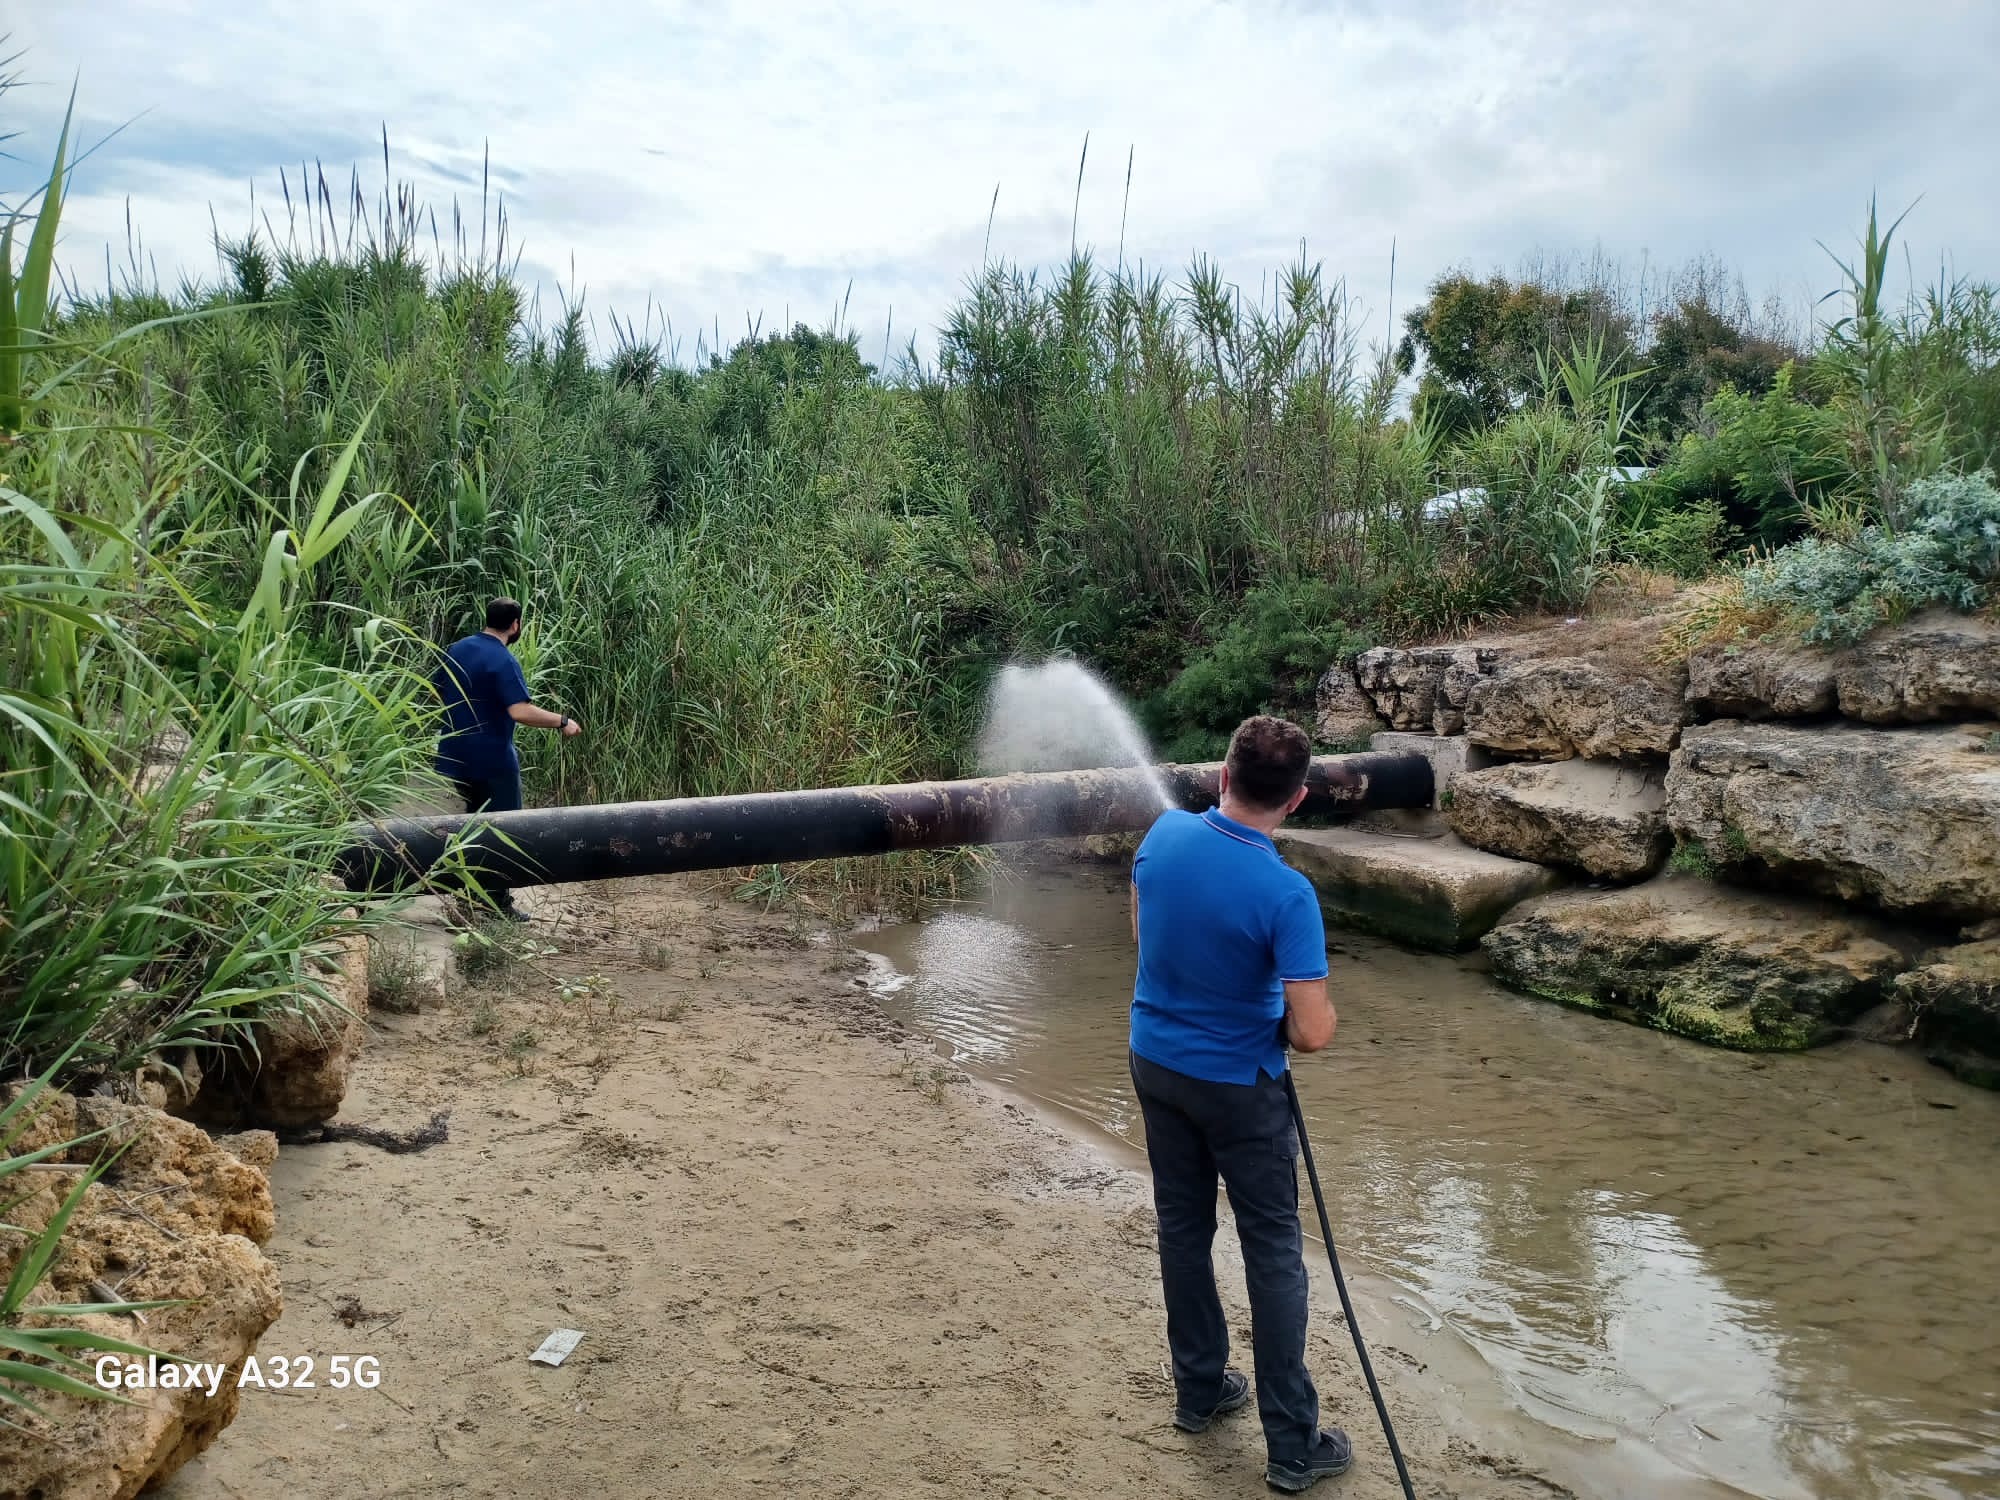 Bioattivatori e reti acchiappa rifiuti nei fiumi, conclusa la prima parte del progetto a Capaccio Paestum